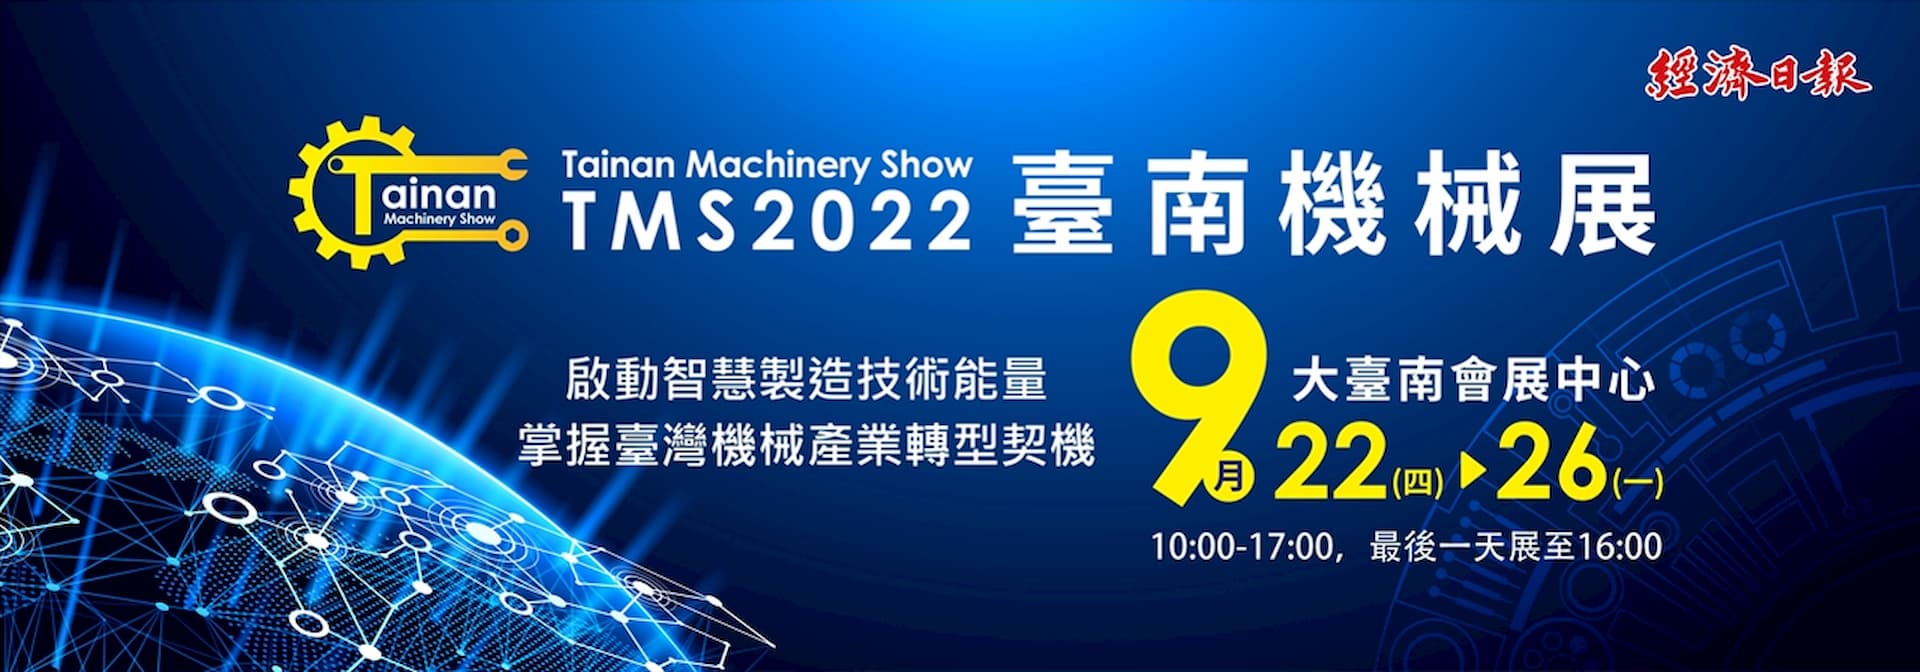 2022台南機械展 大台南會展中心